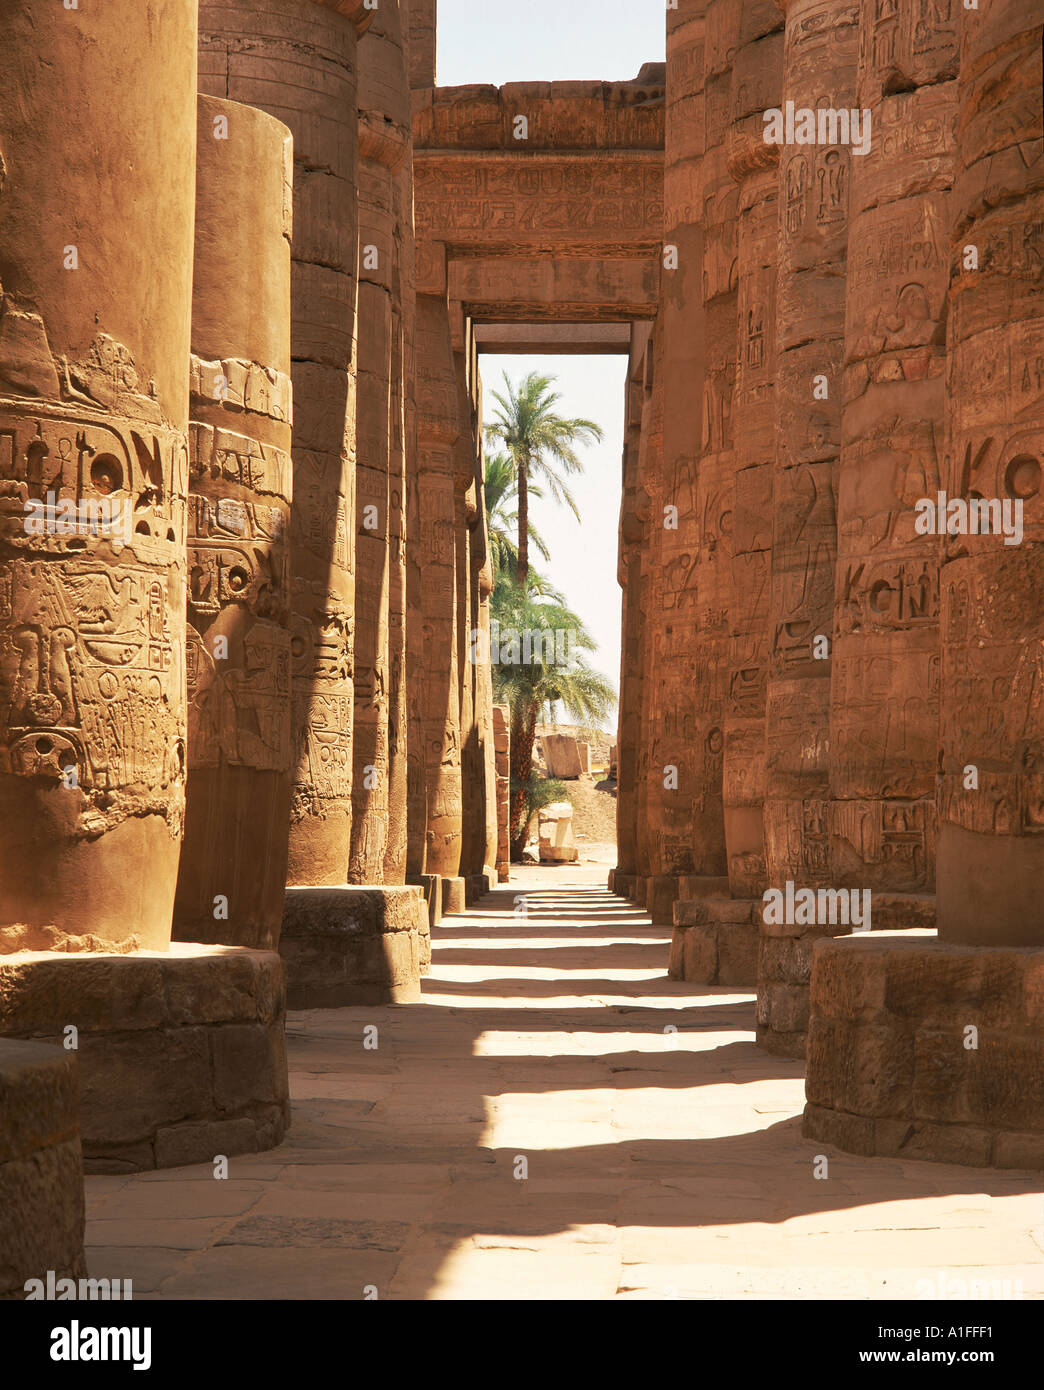 Columnas con jeroglíficos en el Gran Templo de Karnak sala hipóstila salen Tebas Egipto G Hellier Foto de stock